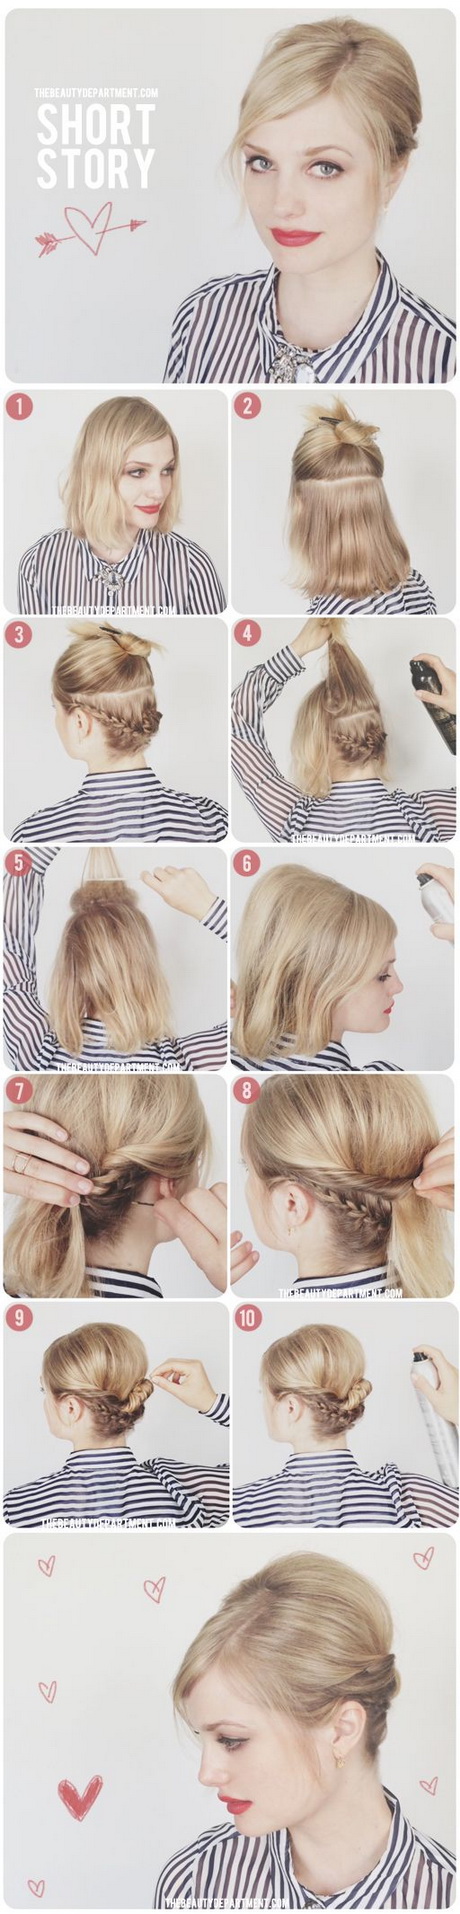 Jak upiąć krótkie włosy